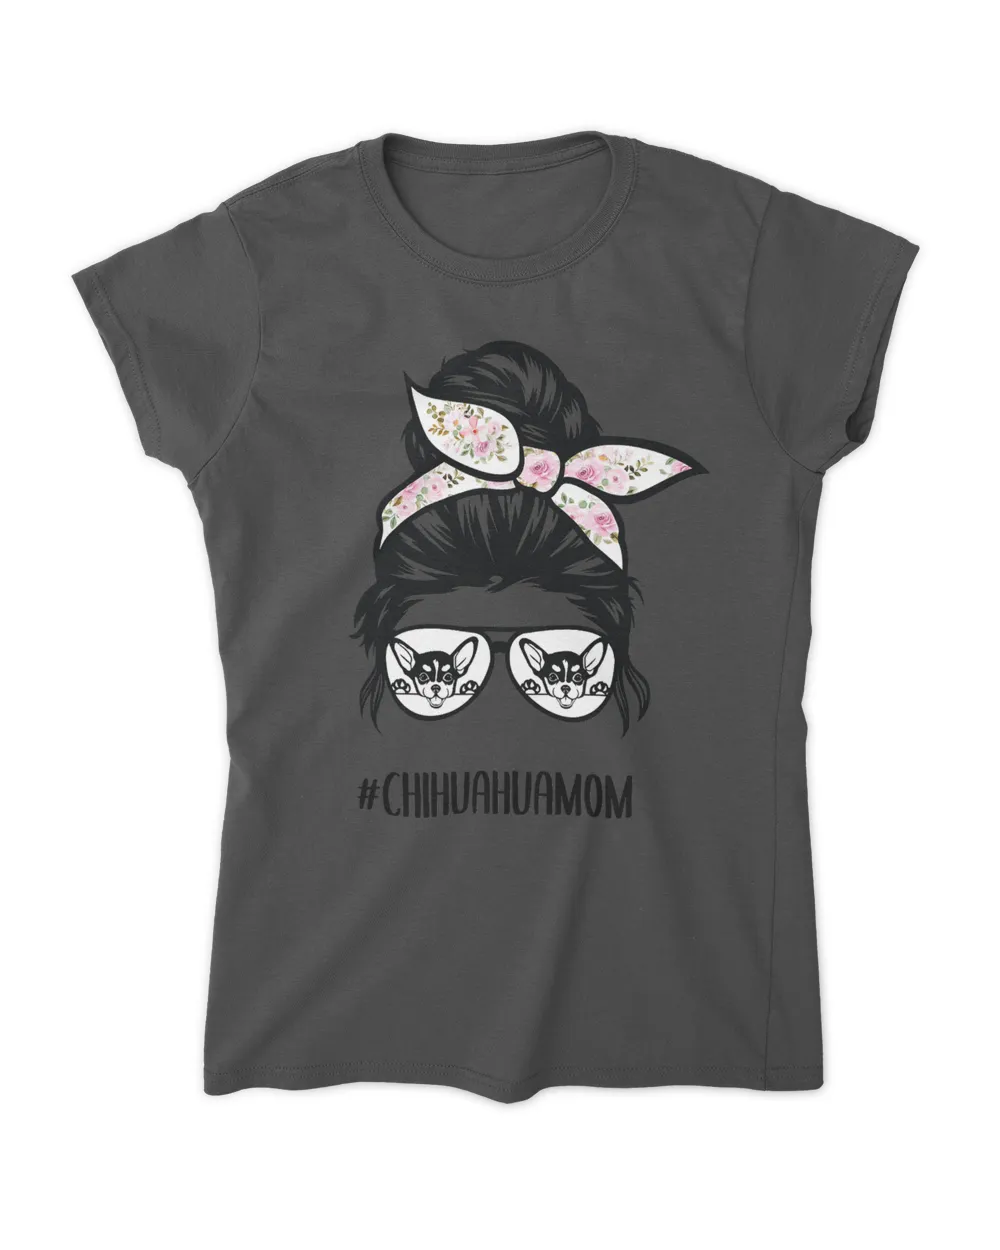 Chihuahua Mom messy bun hair glasses, Chihuahua mama T-Shirt